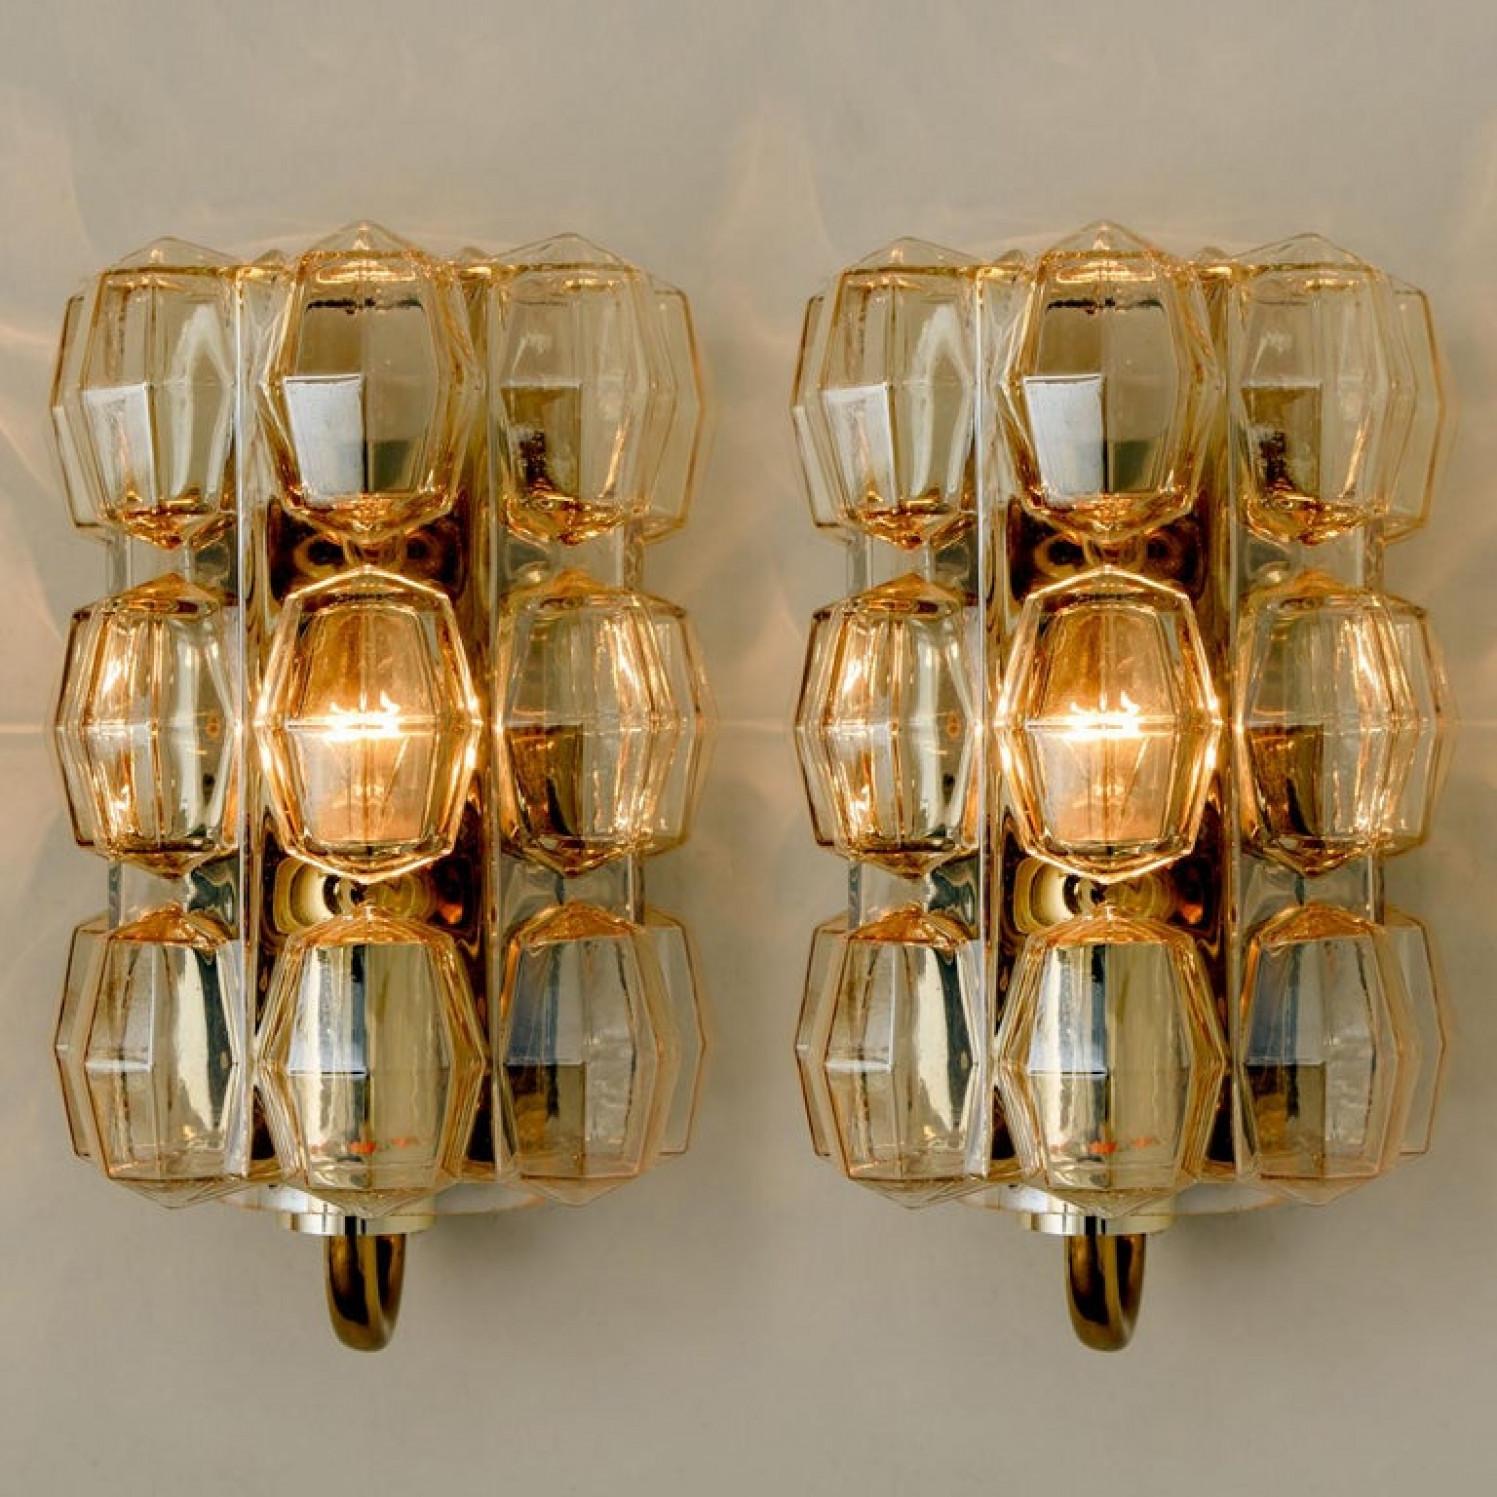 Associez une magnifique applique en verre bullé ambré conçue par Helena Tynell pour Glashütte Limburg. Un classique du design ! L'applique a une apparence très forte et diffuse une lumière magnifique. Avec quincaillerie en laiton.

Veuillez noter